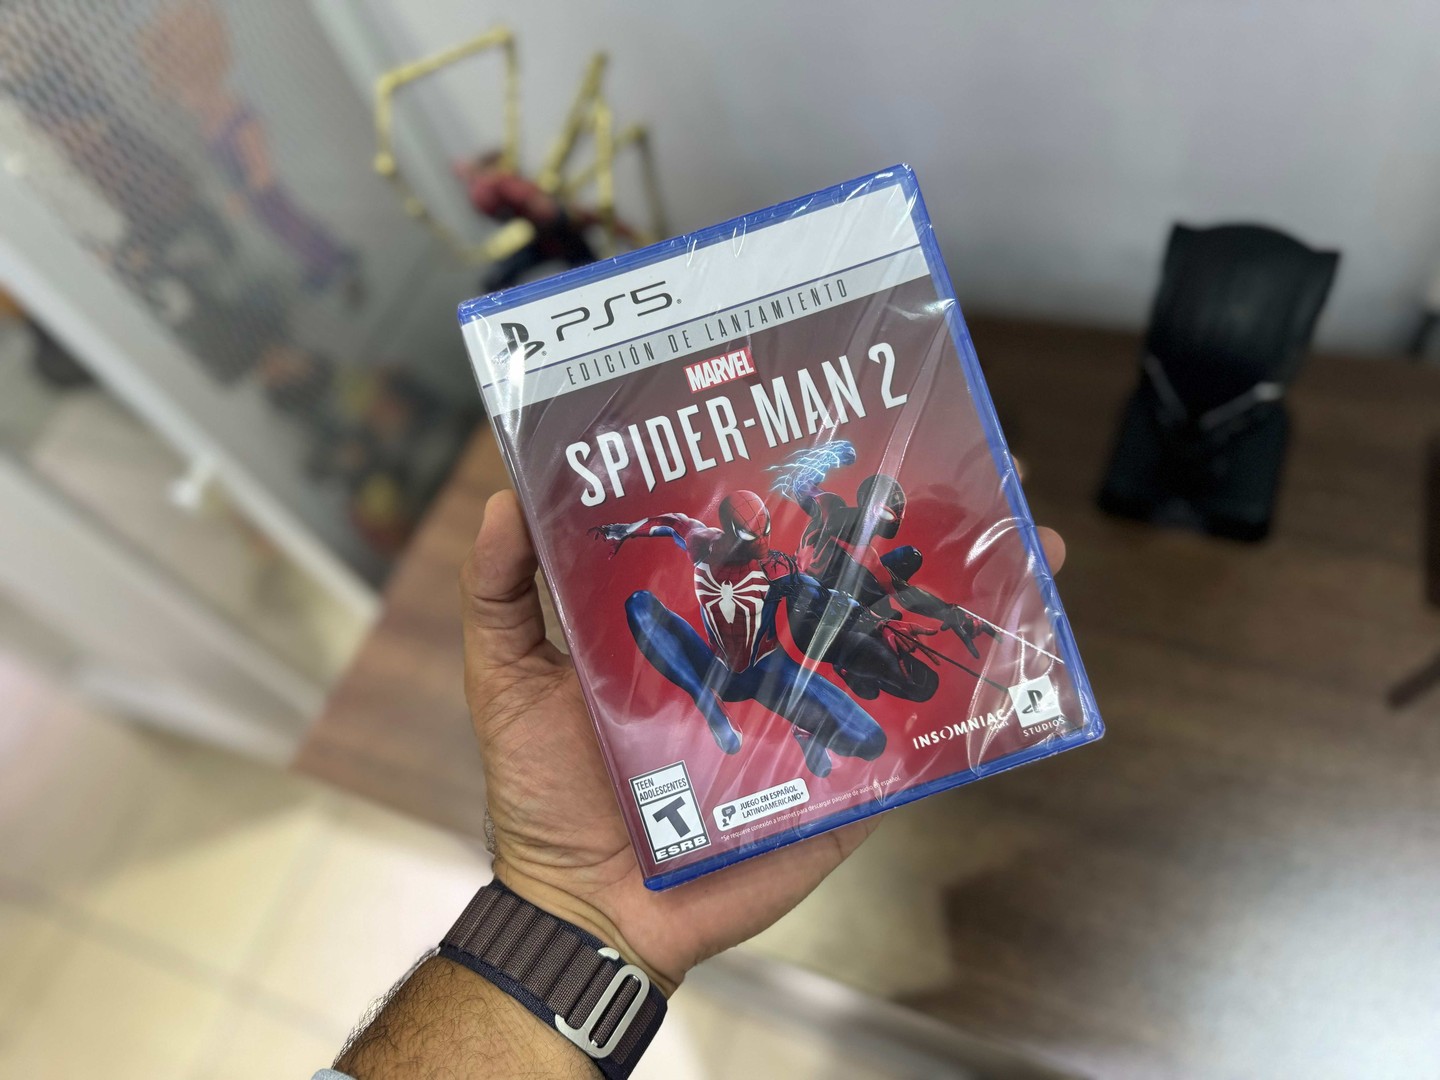 consolas y videojuegos - Video Juego Spider-Man 2 PLAYSTATION 5 Sellados, RD$ 4,500 NEG 0